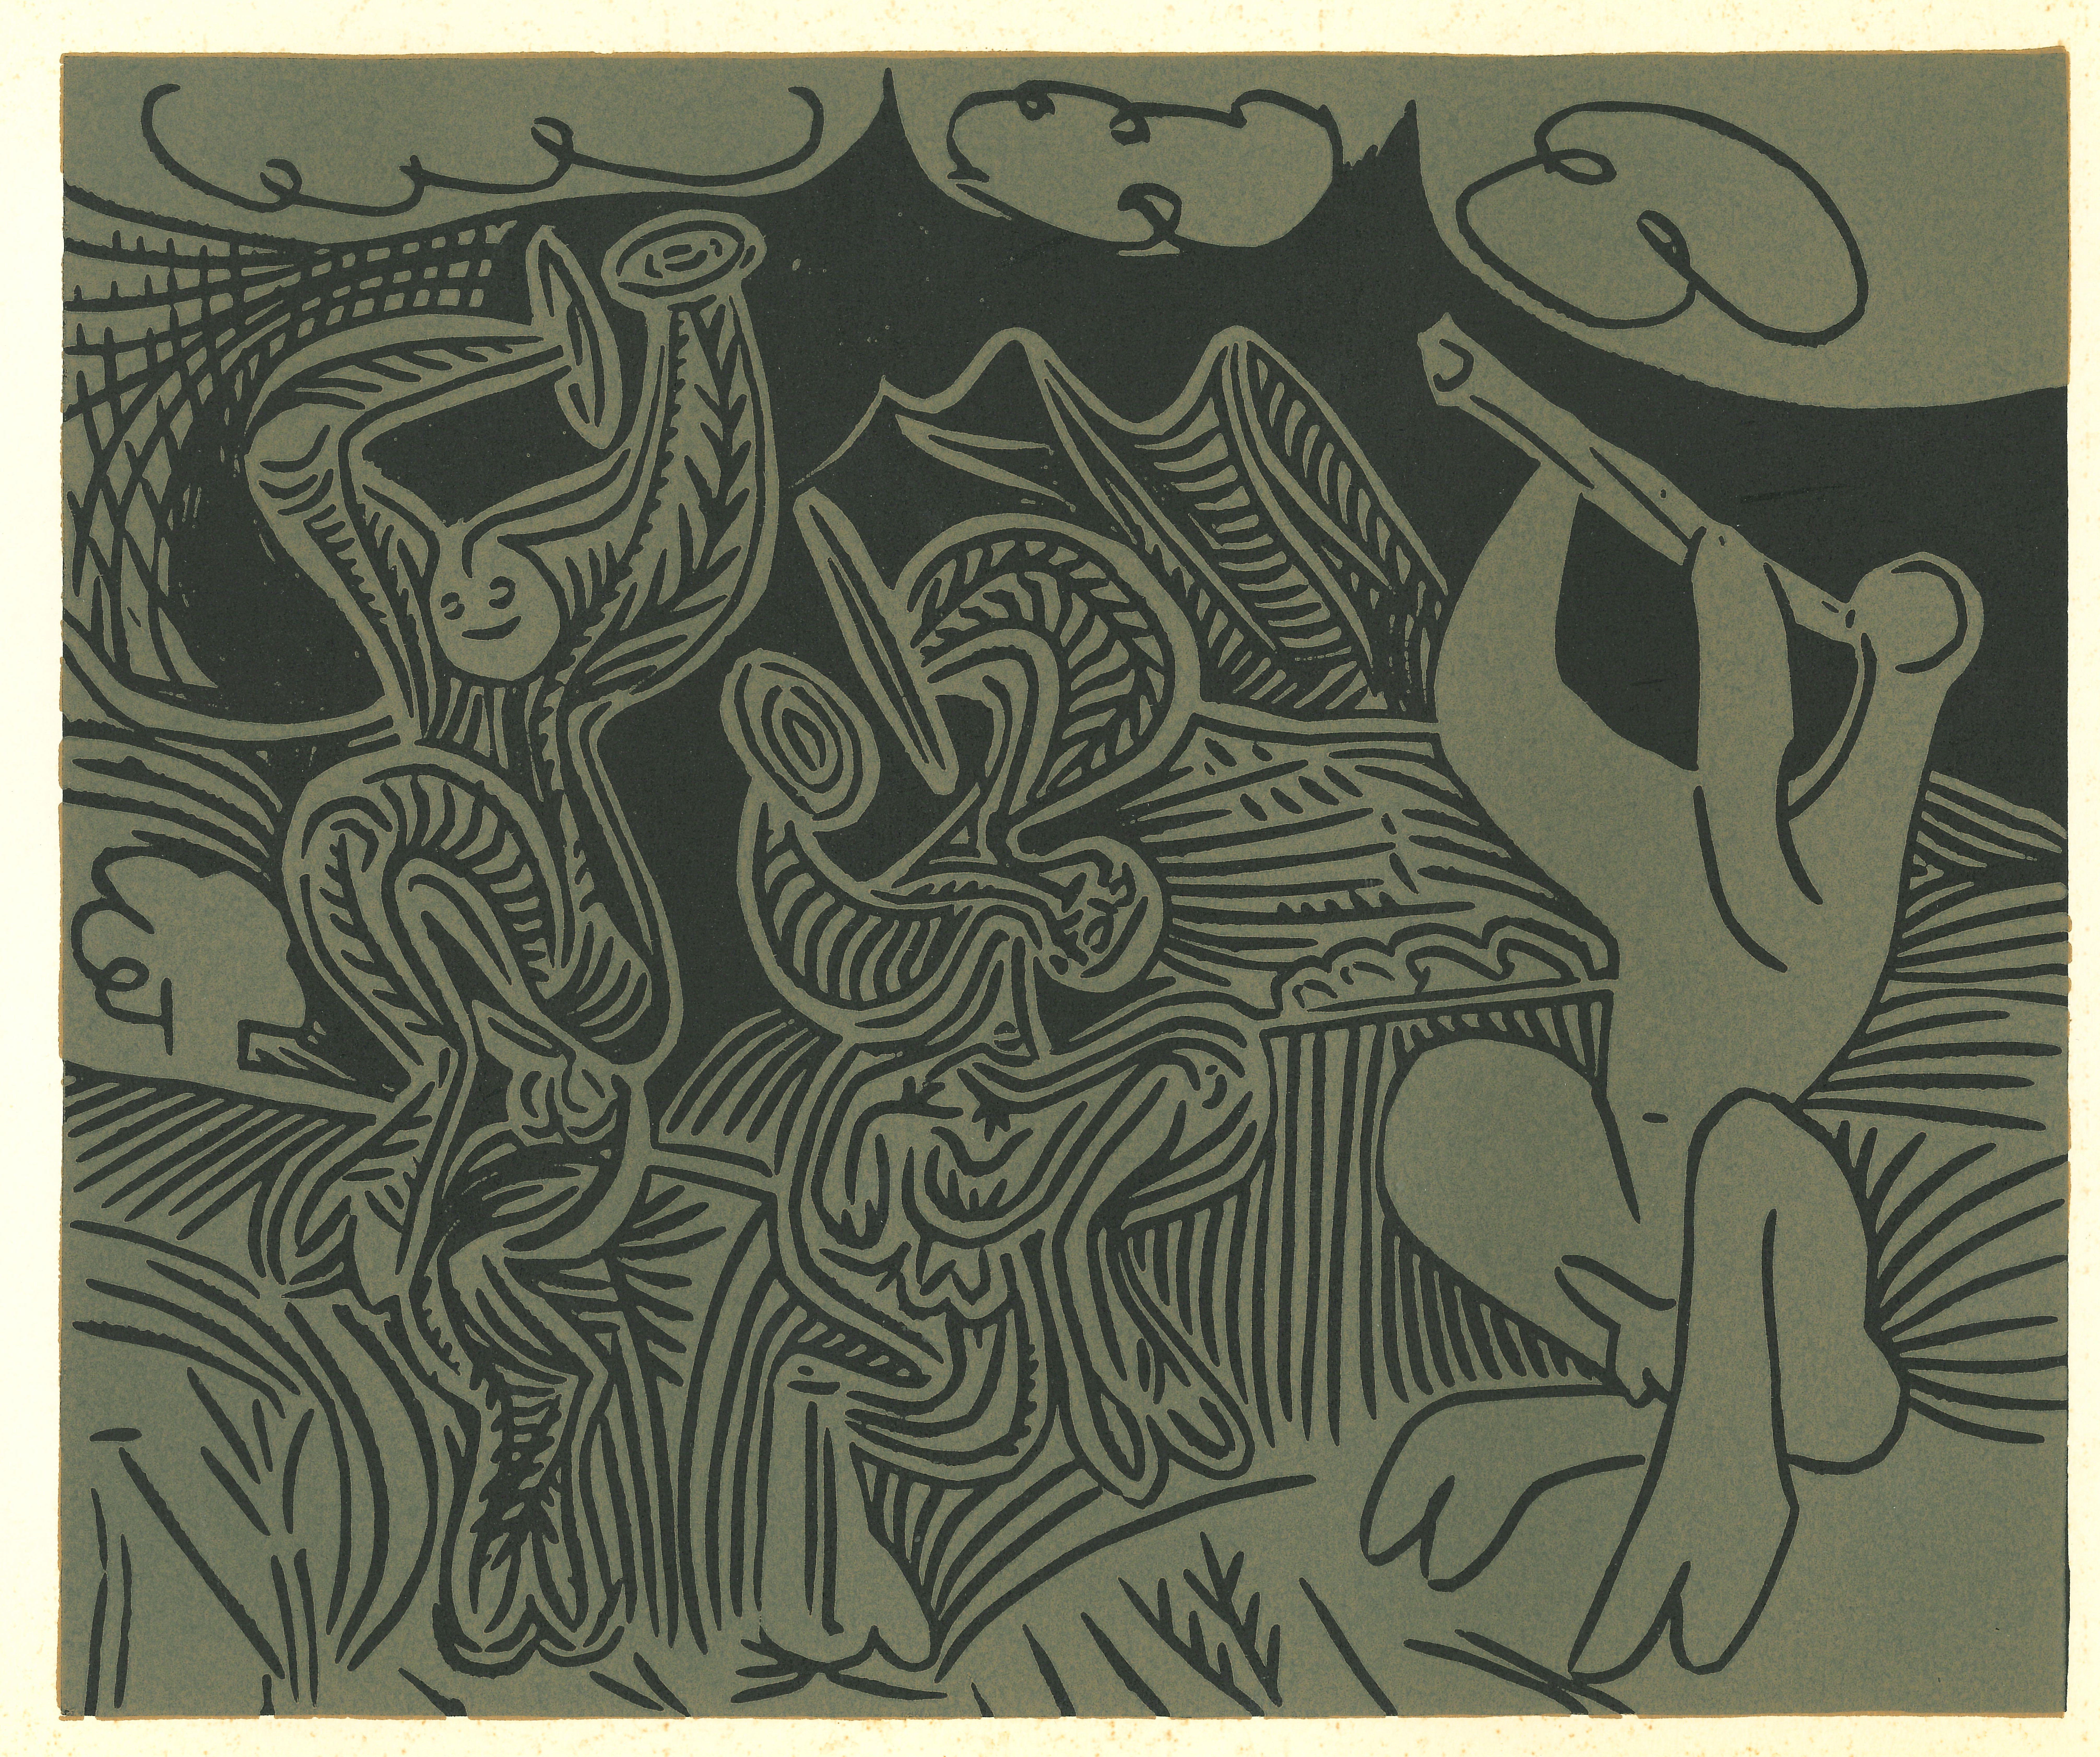 (after) Pablo Picasso Figurative Print - Danseurs et Musicien  - Linocut Reproduction After Pablo Picasso - 1962